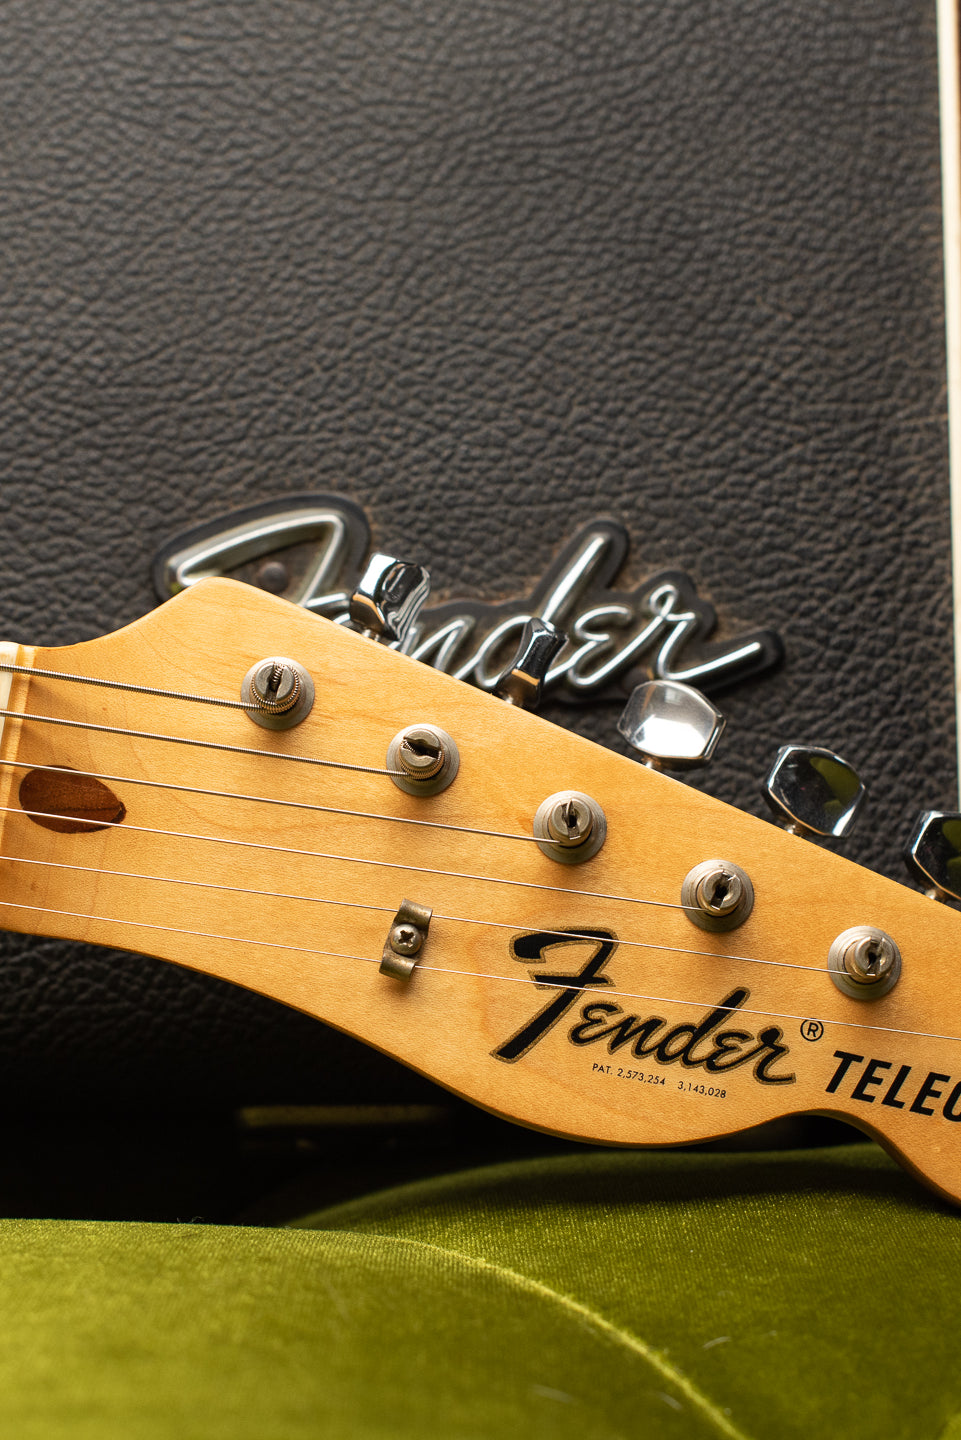 1969 Fender Telecaster Thinline neck